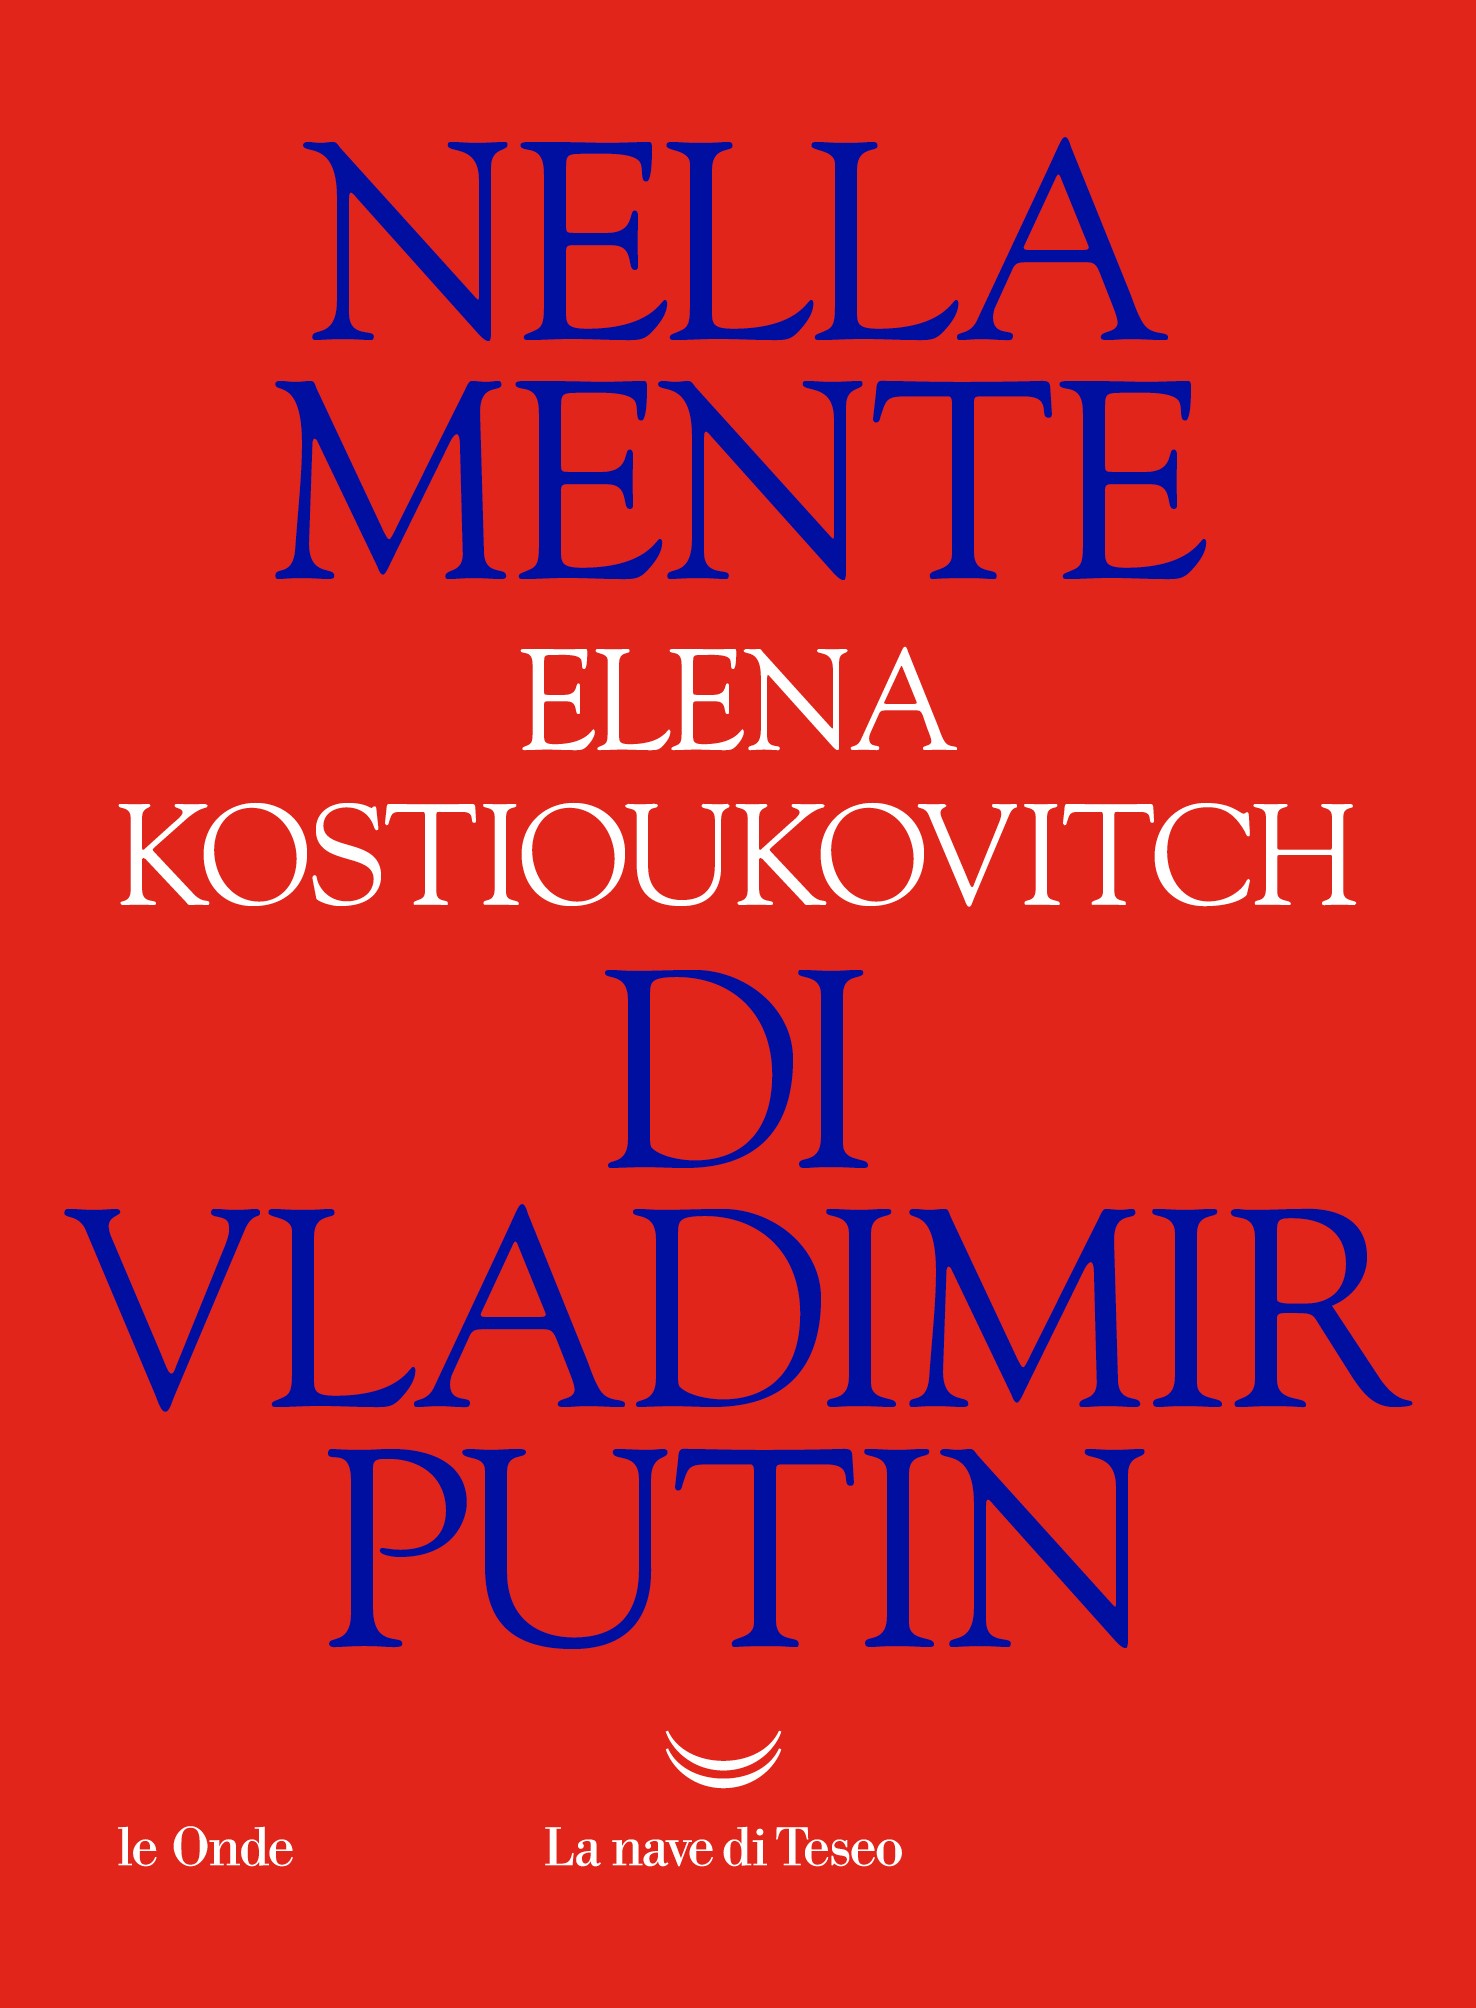 Nella mente di Vladimir Putin - Librerie.coop